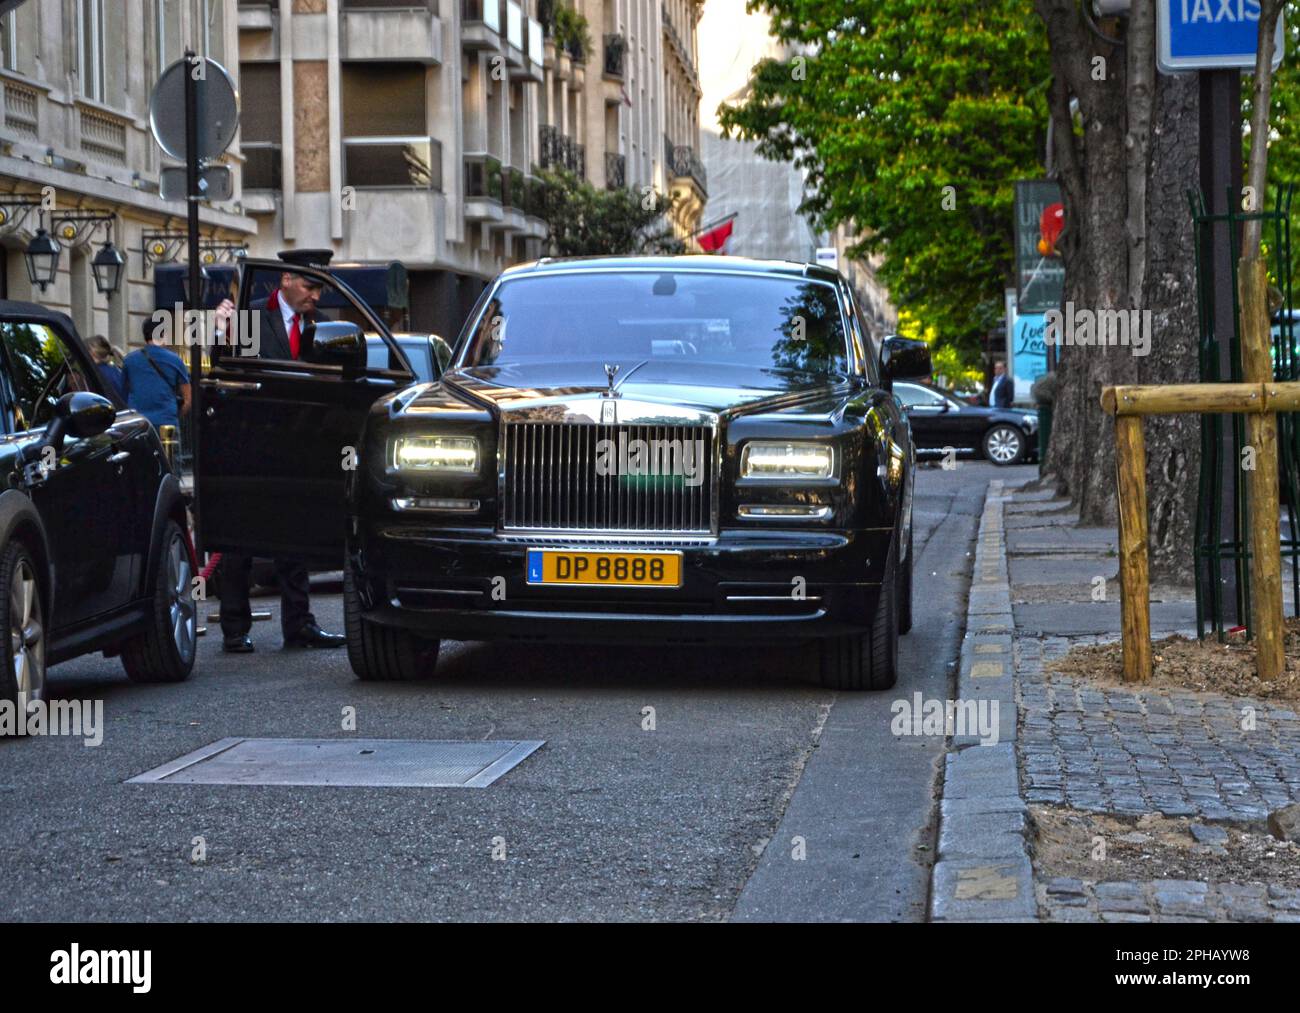 Paris, France - 18 avril 2015 : fantôme de la royce des Rolls noirs garés dans une rue, dans le quartier de George V. Un employé d'un palais ouvre la porte à la cus Banque D'Images